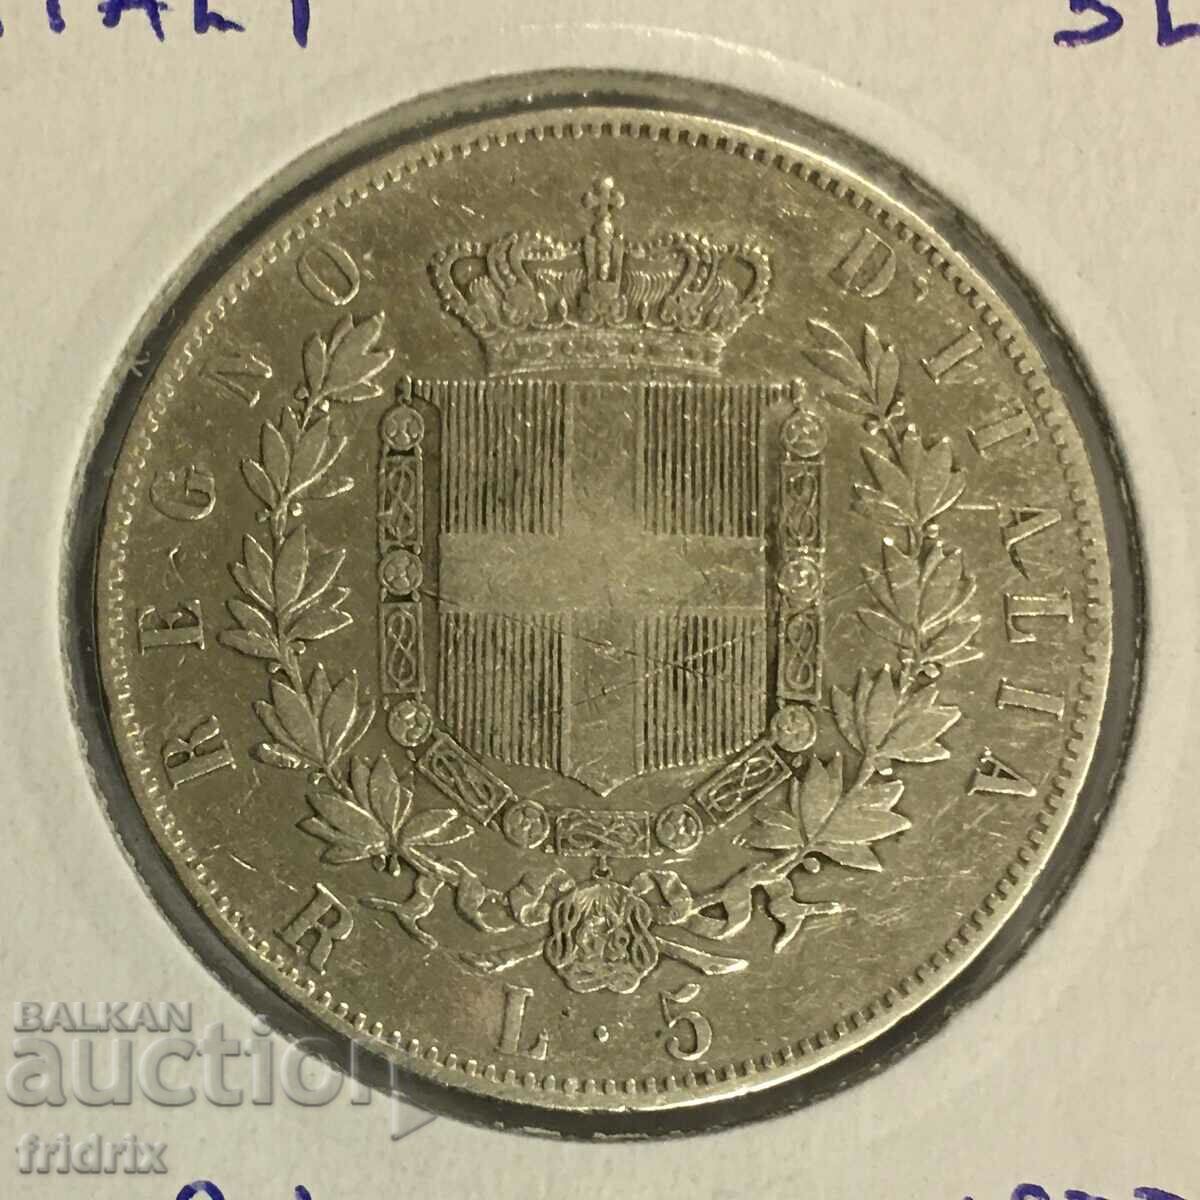 Italia 1877 R / Italia 5 lire 1877 R